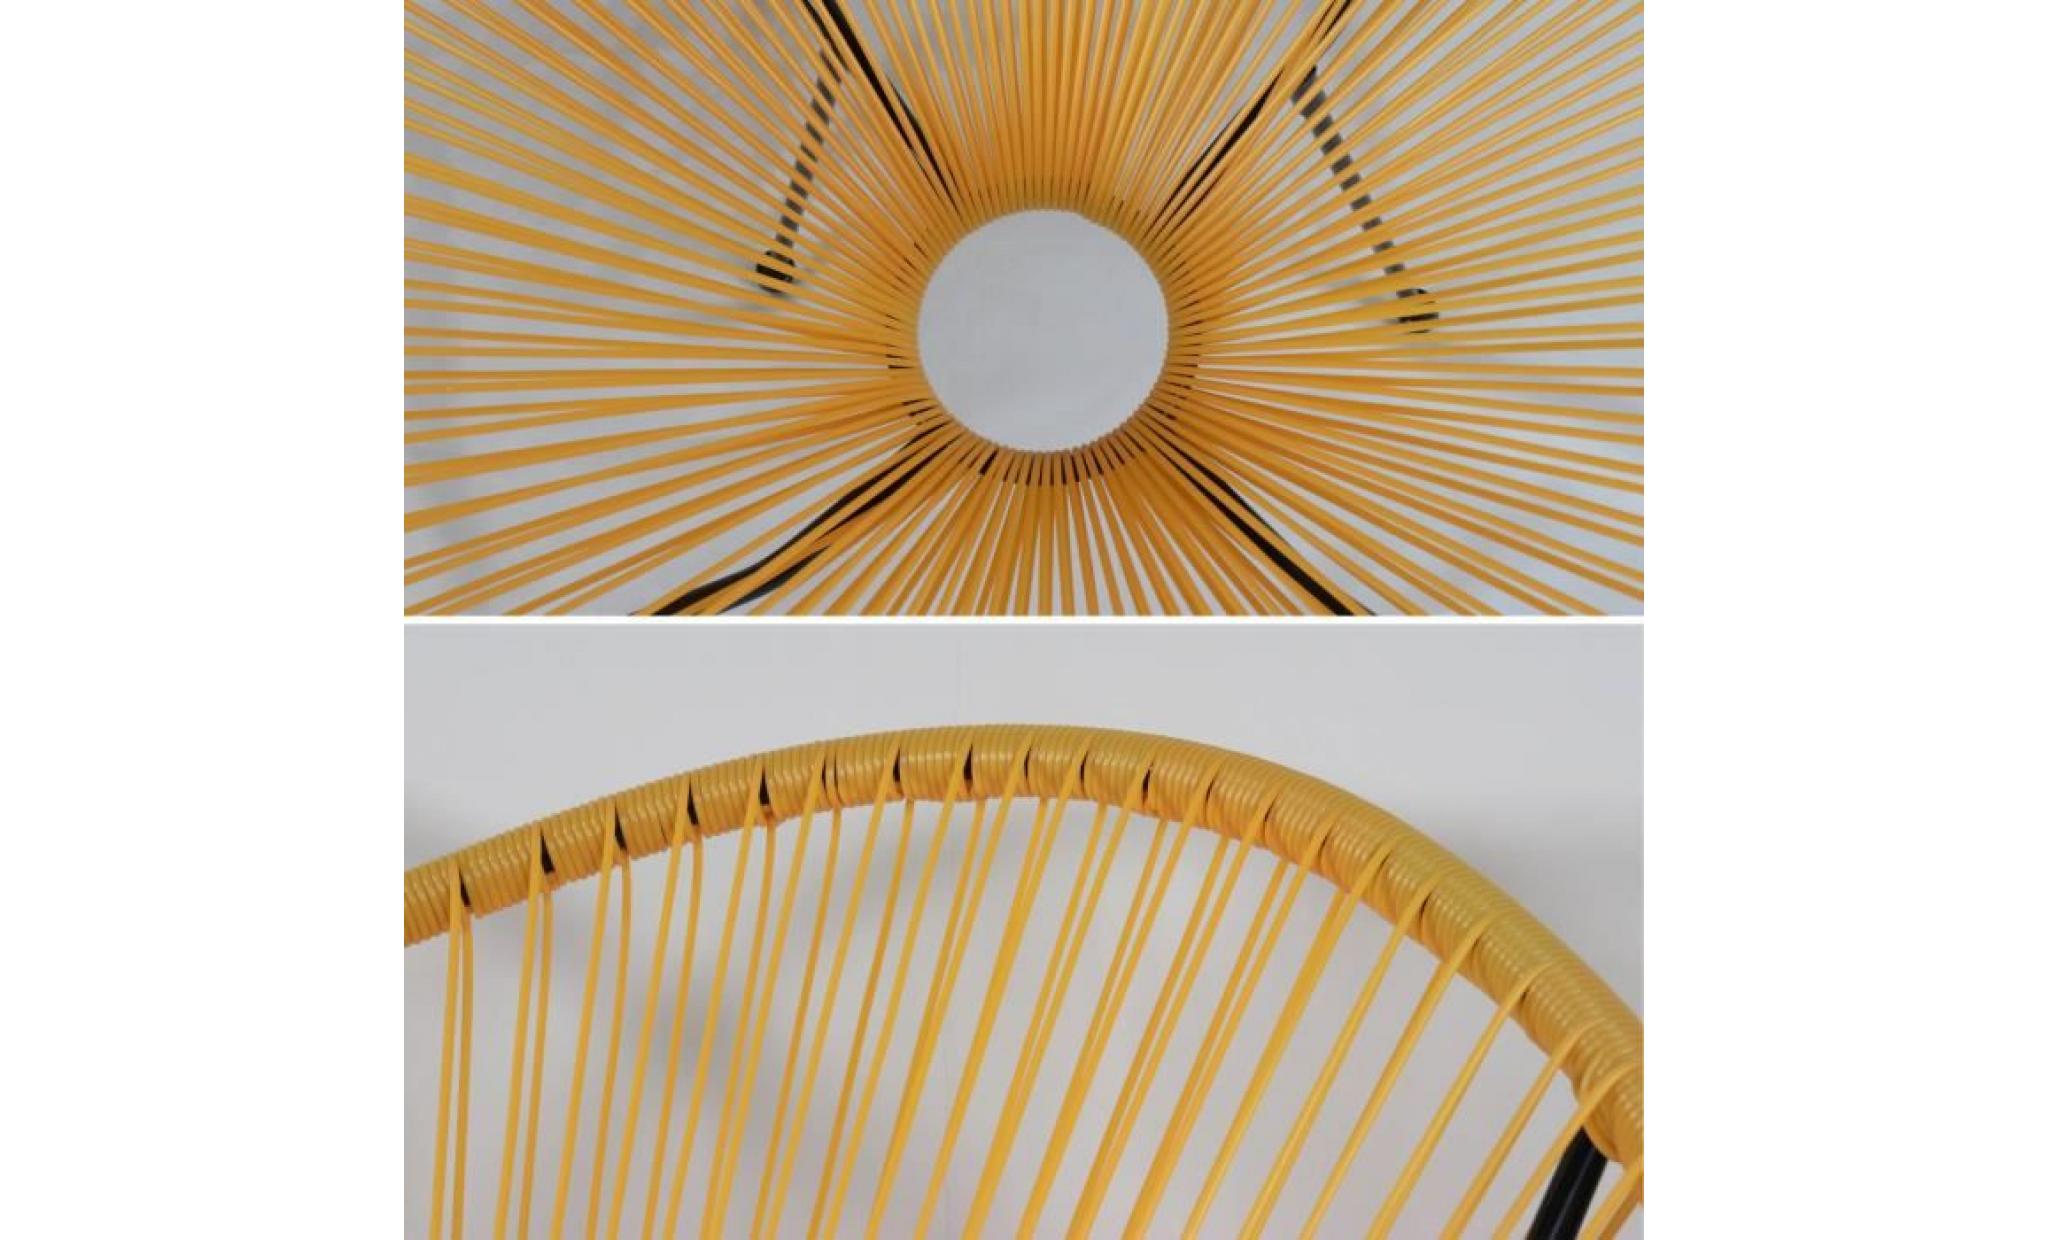 lot de 2 fauteuils design oeuf   acapulco jaune   fauteuils 4 pieds design rétro, cordage plastique, intérieur / extérieur pas cher